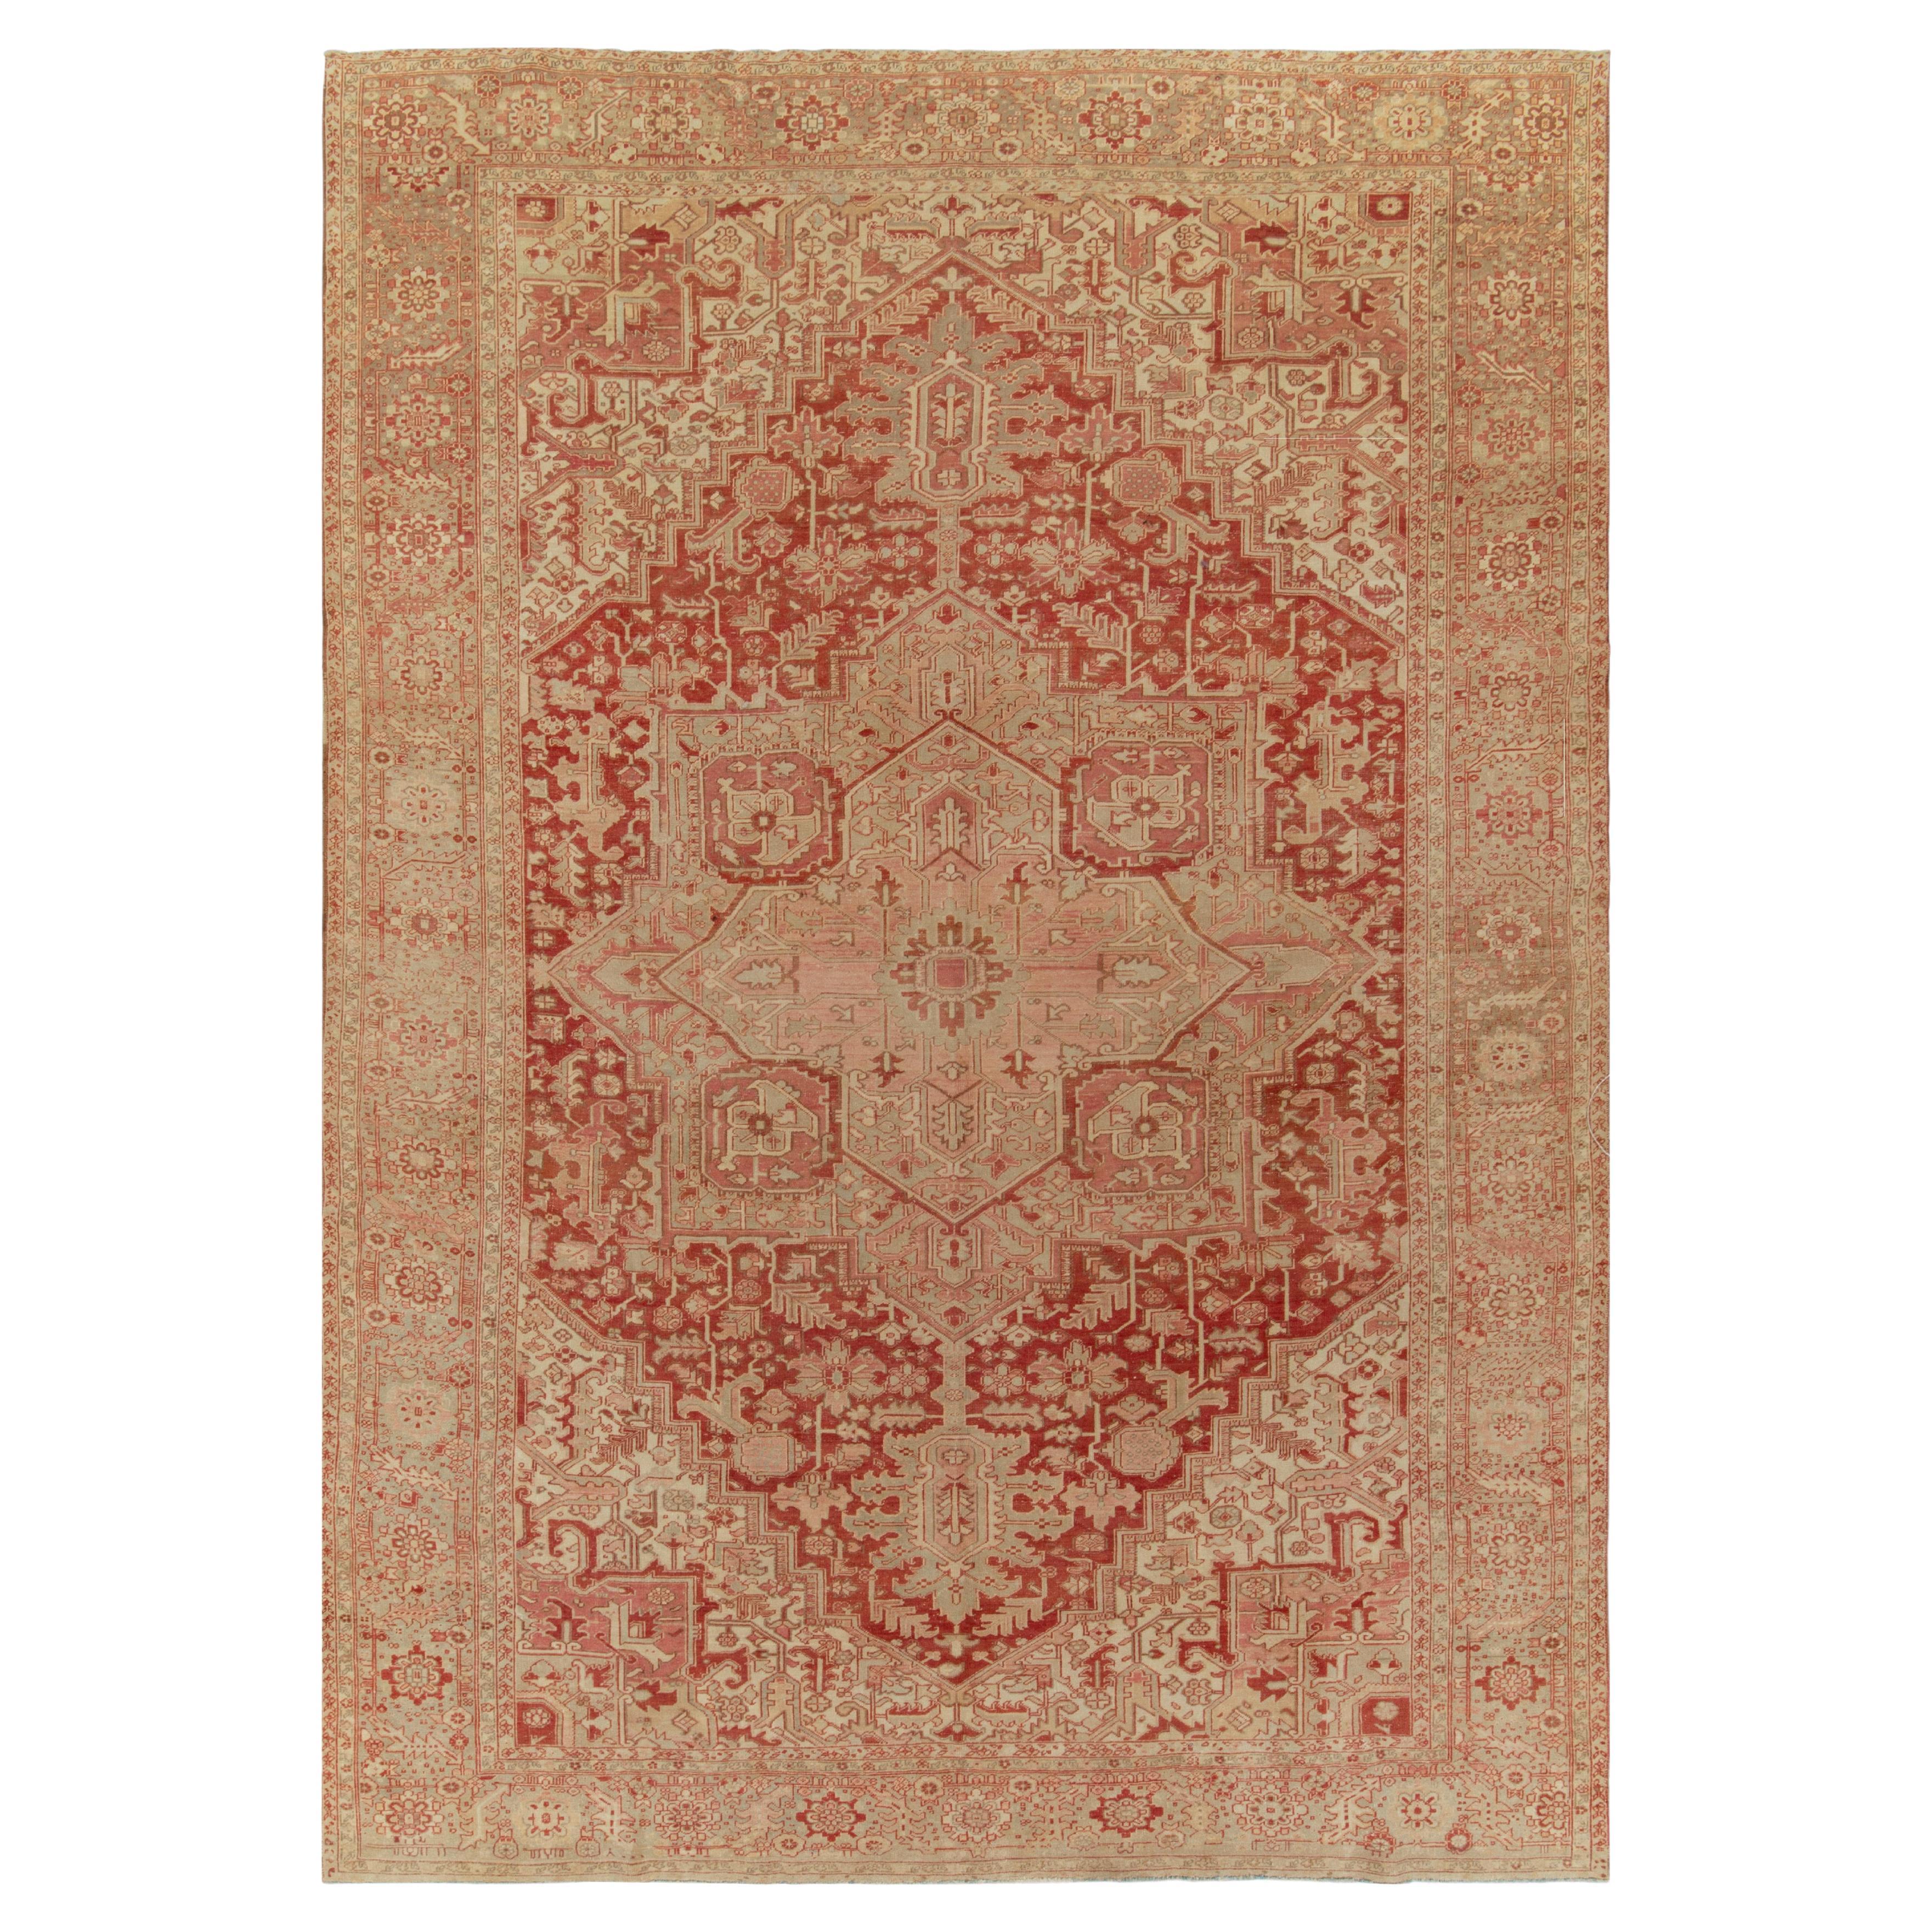 1950s Vintage Serapi rug in Red & Pink Floral Medallion Patterns by Rug & Kilim For Sale